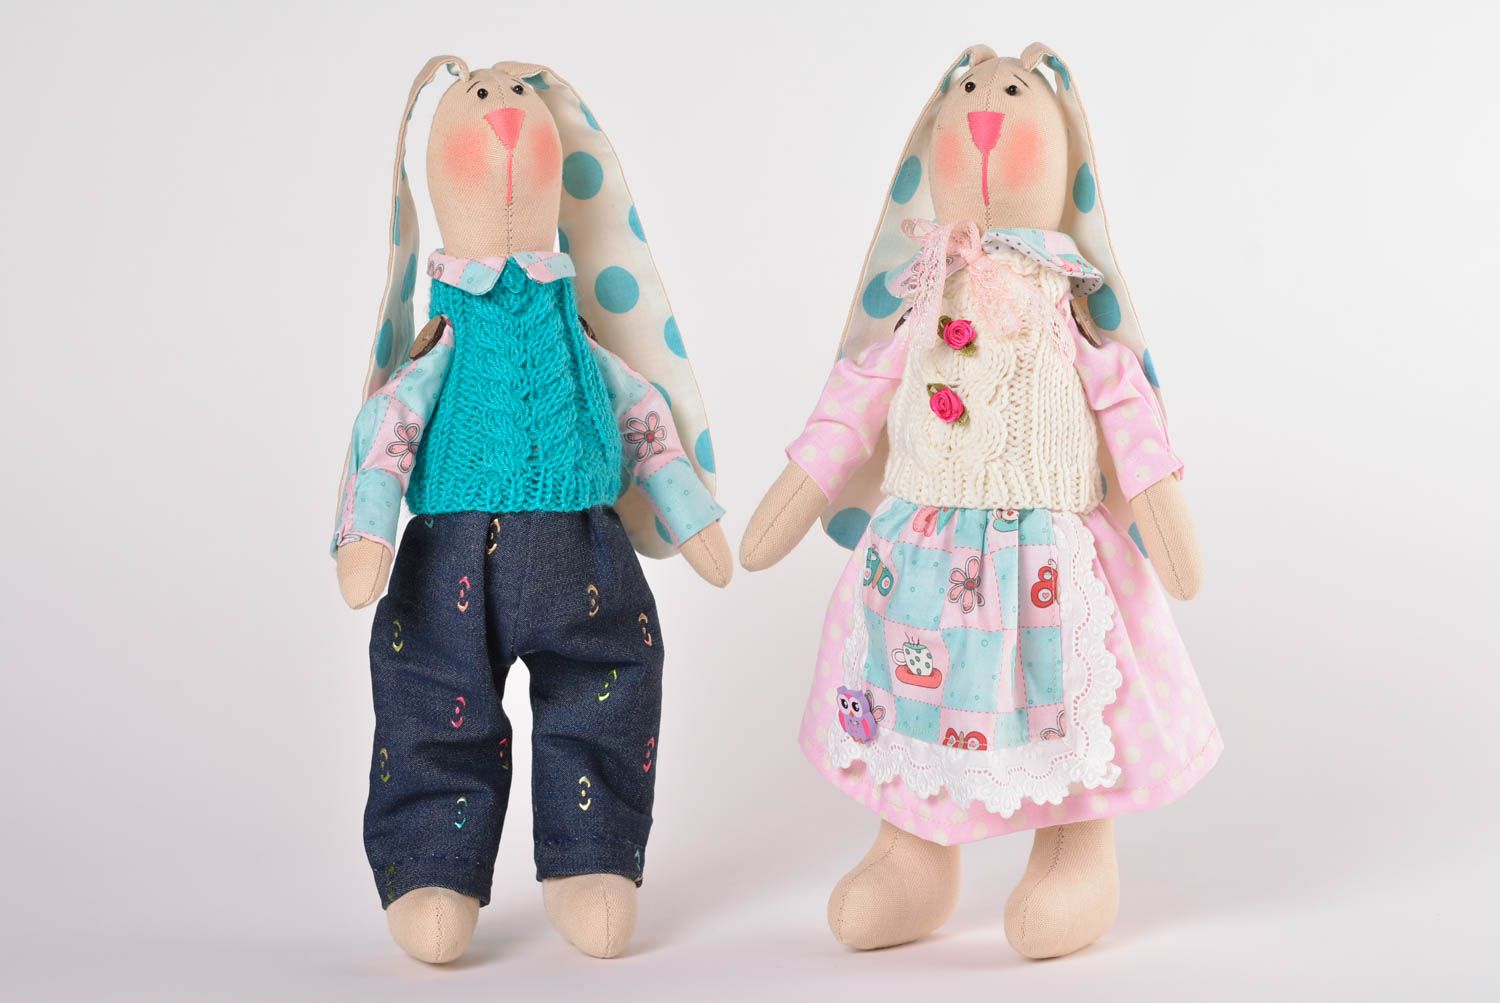 Peluches originales hechos a mano juguetes de tela cosidos muñecos de trapo foto 1